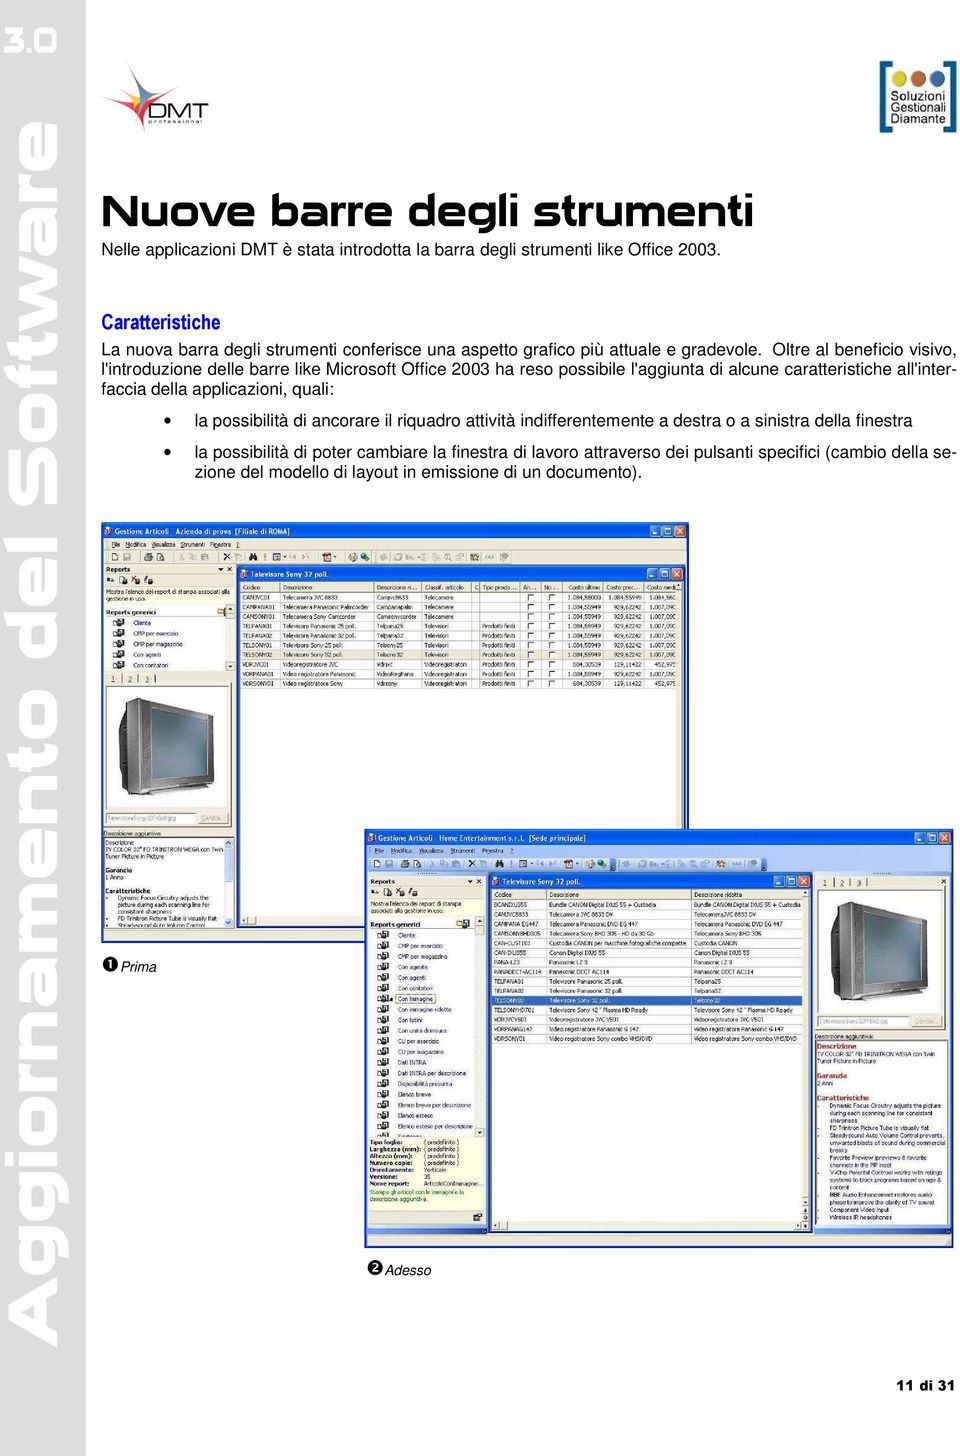 Oltre al beneficio visivo, l'introduzione delle barre like Microsoft Office 2003 ha reso possibile l'aggiunta di alcune caratteristiche all'interfaccia della applicazioni,